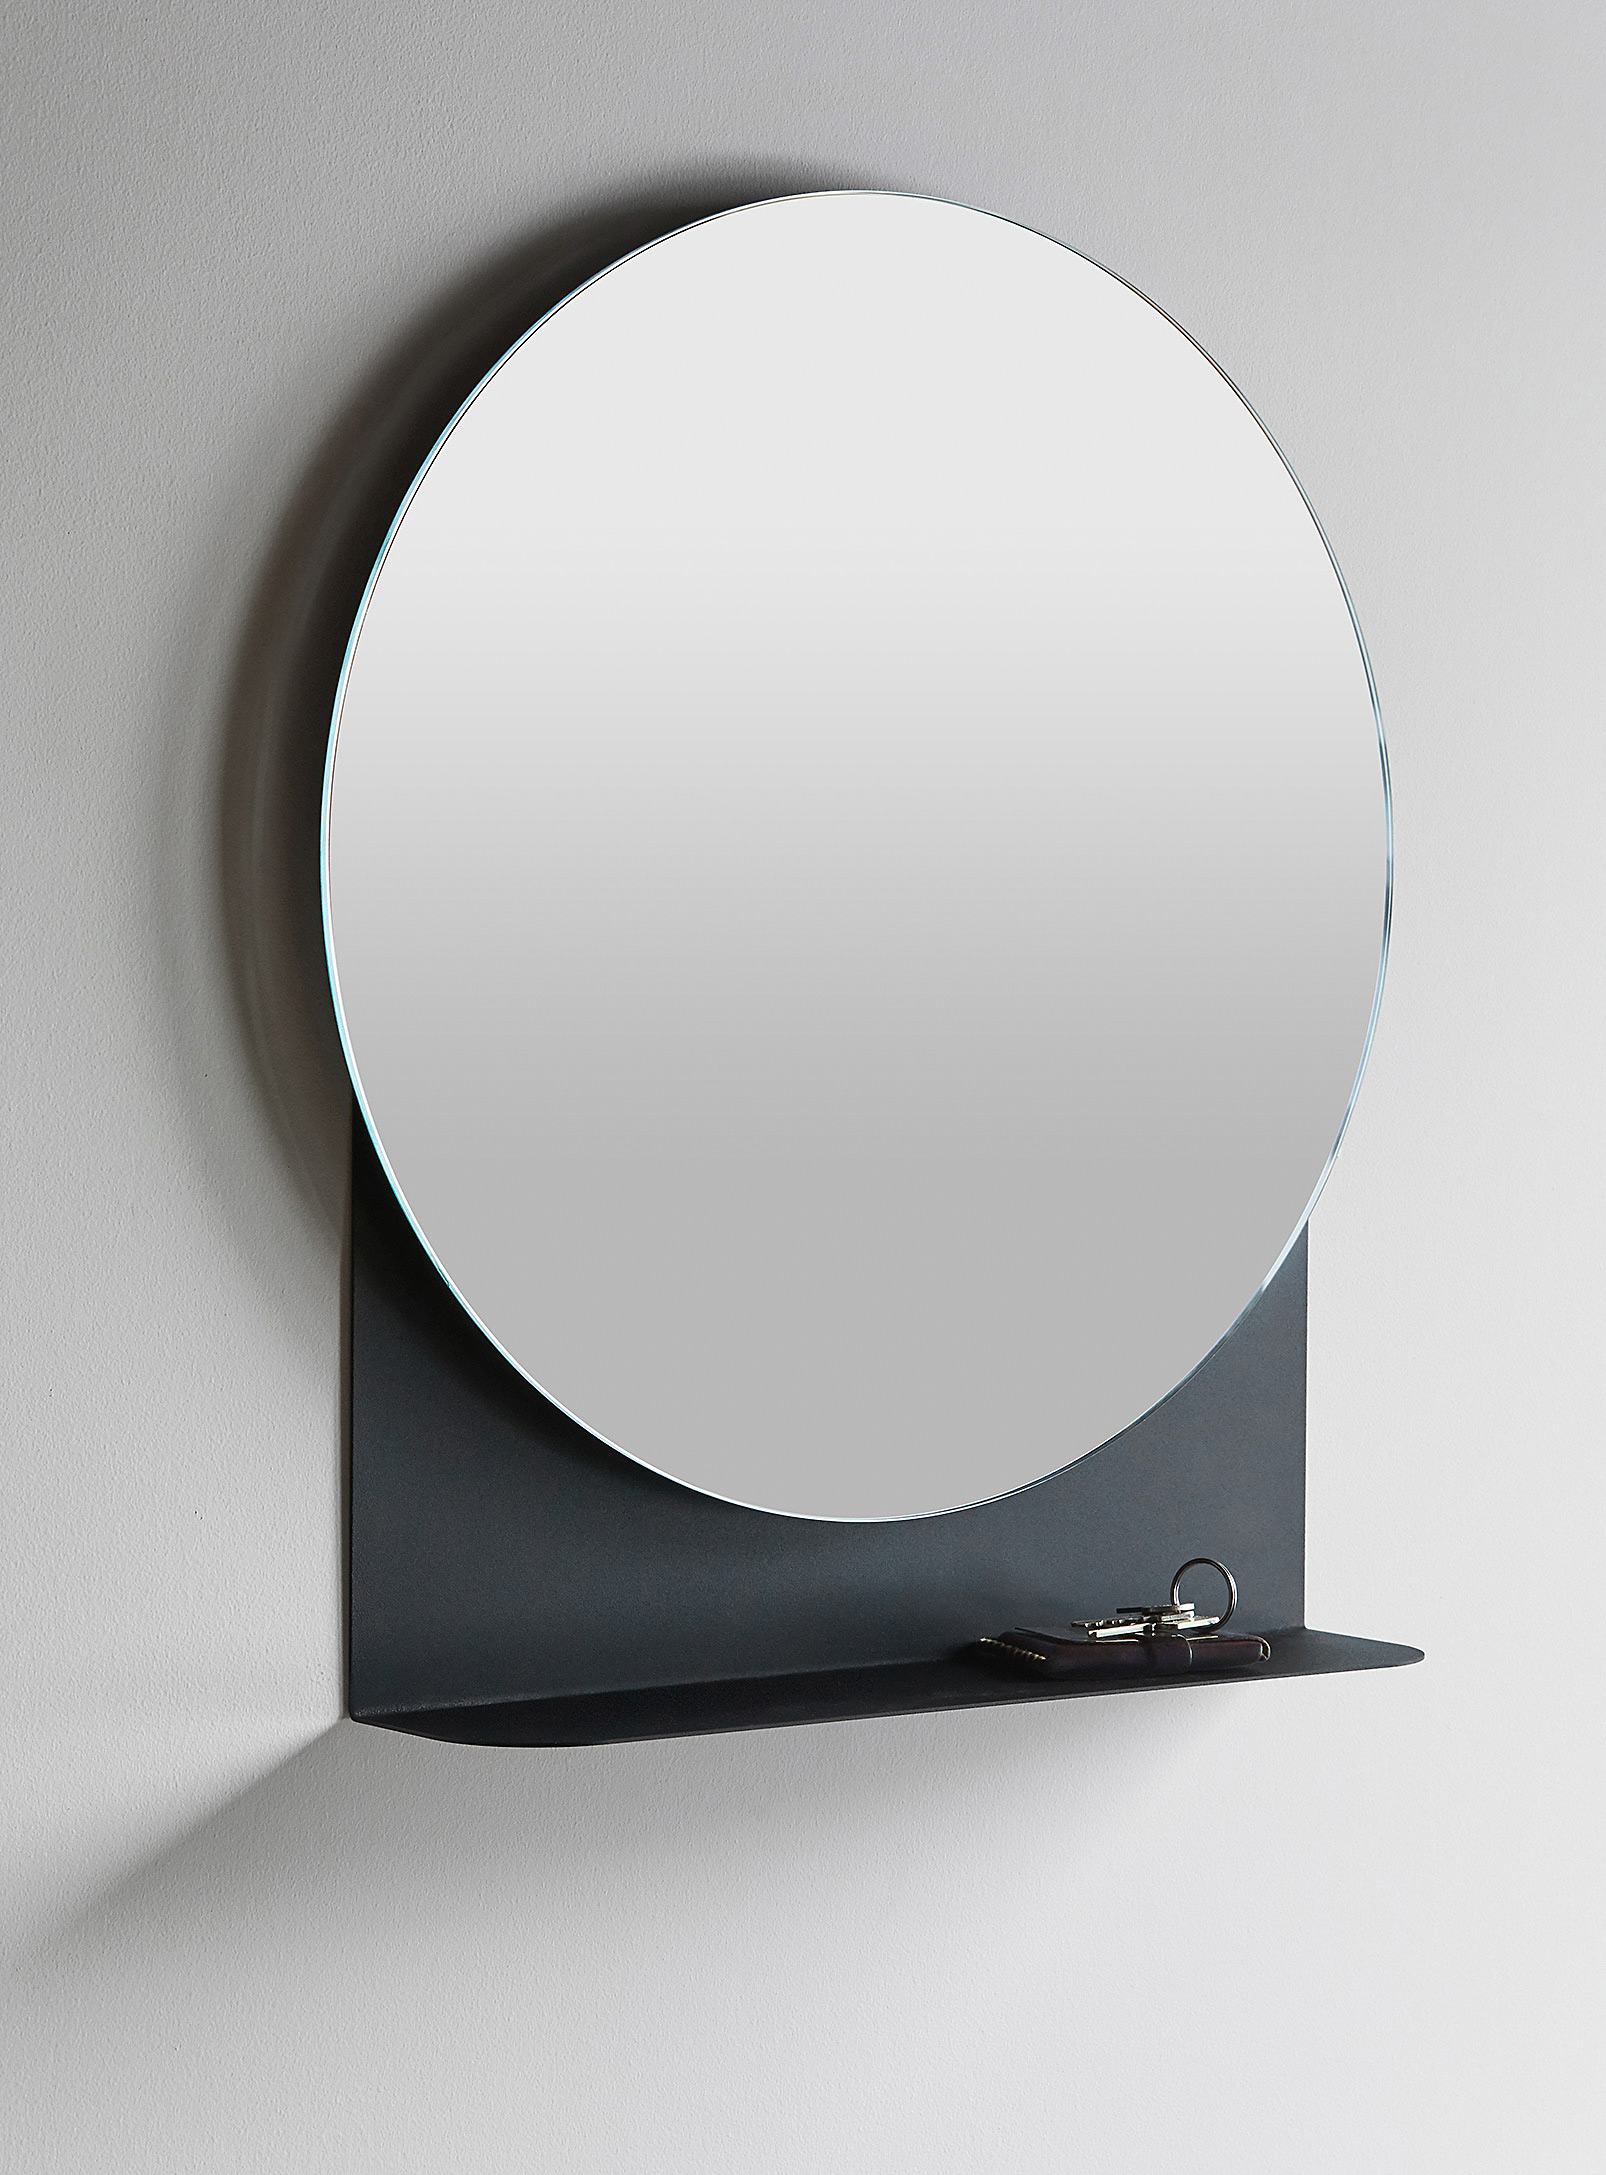 MARdiROS - Le miroir-étagère Shelfie